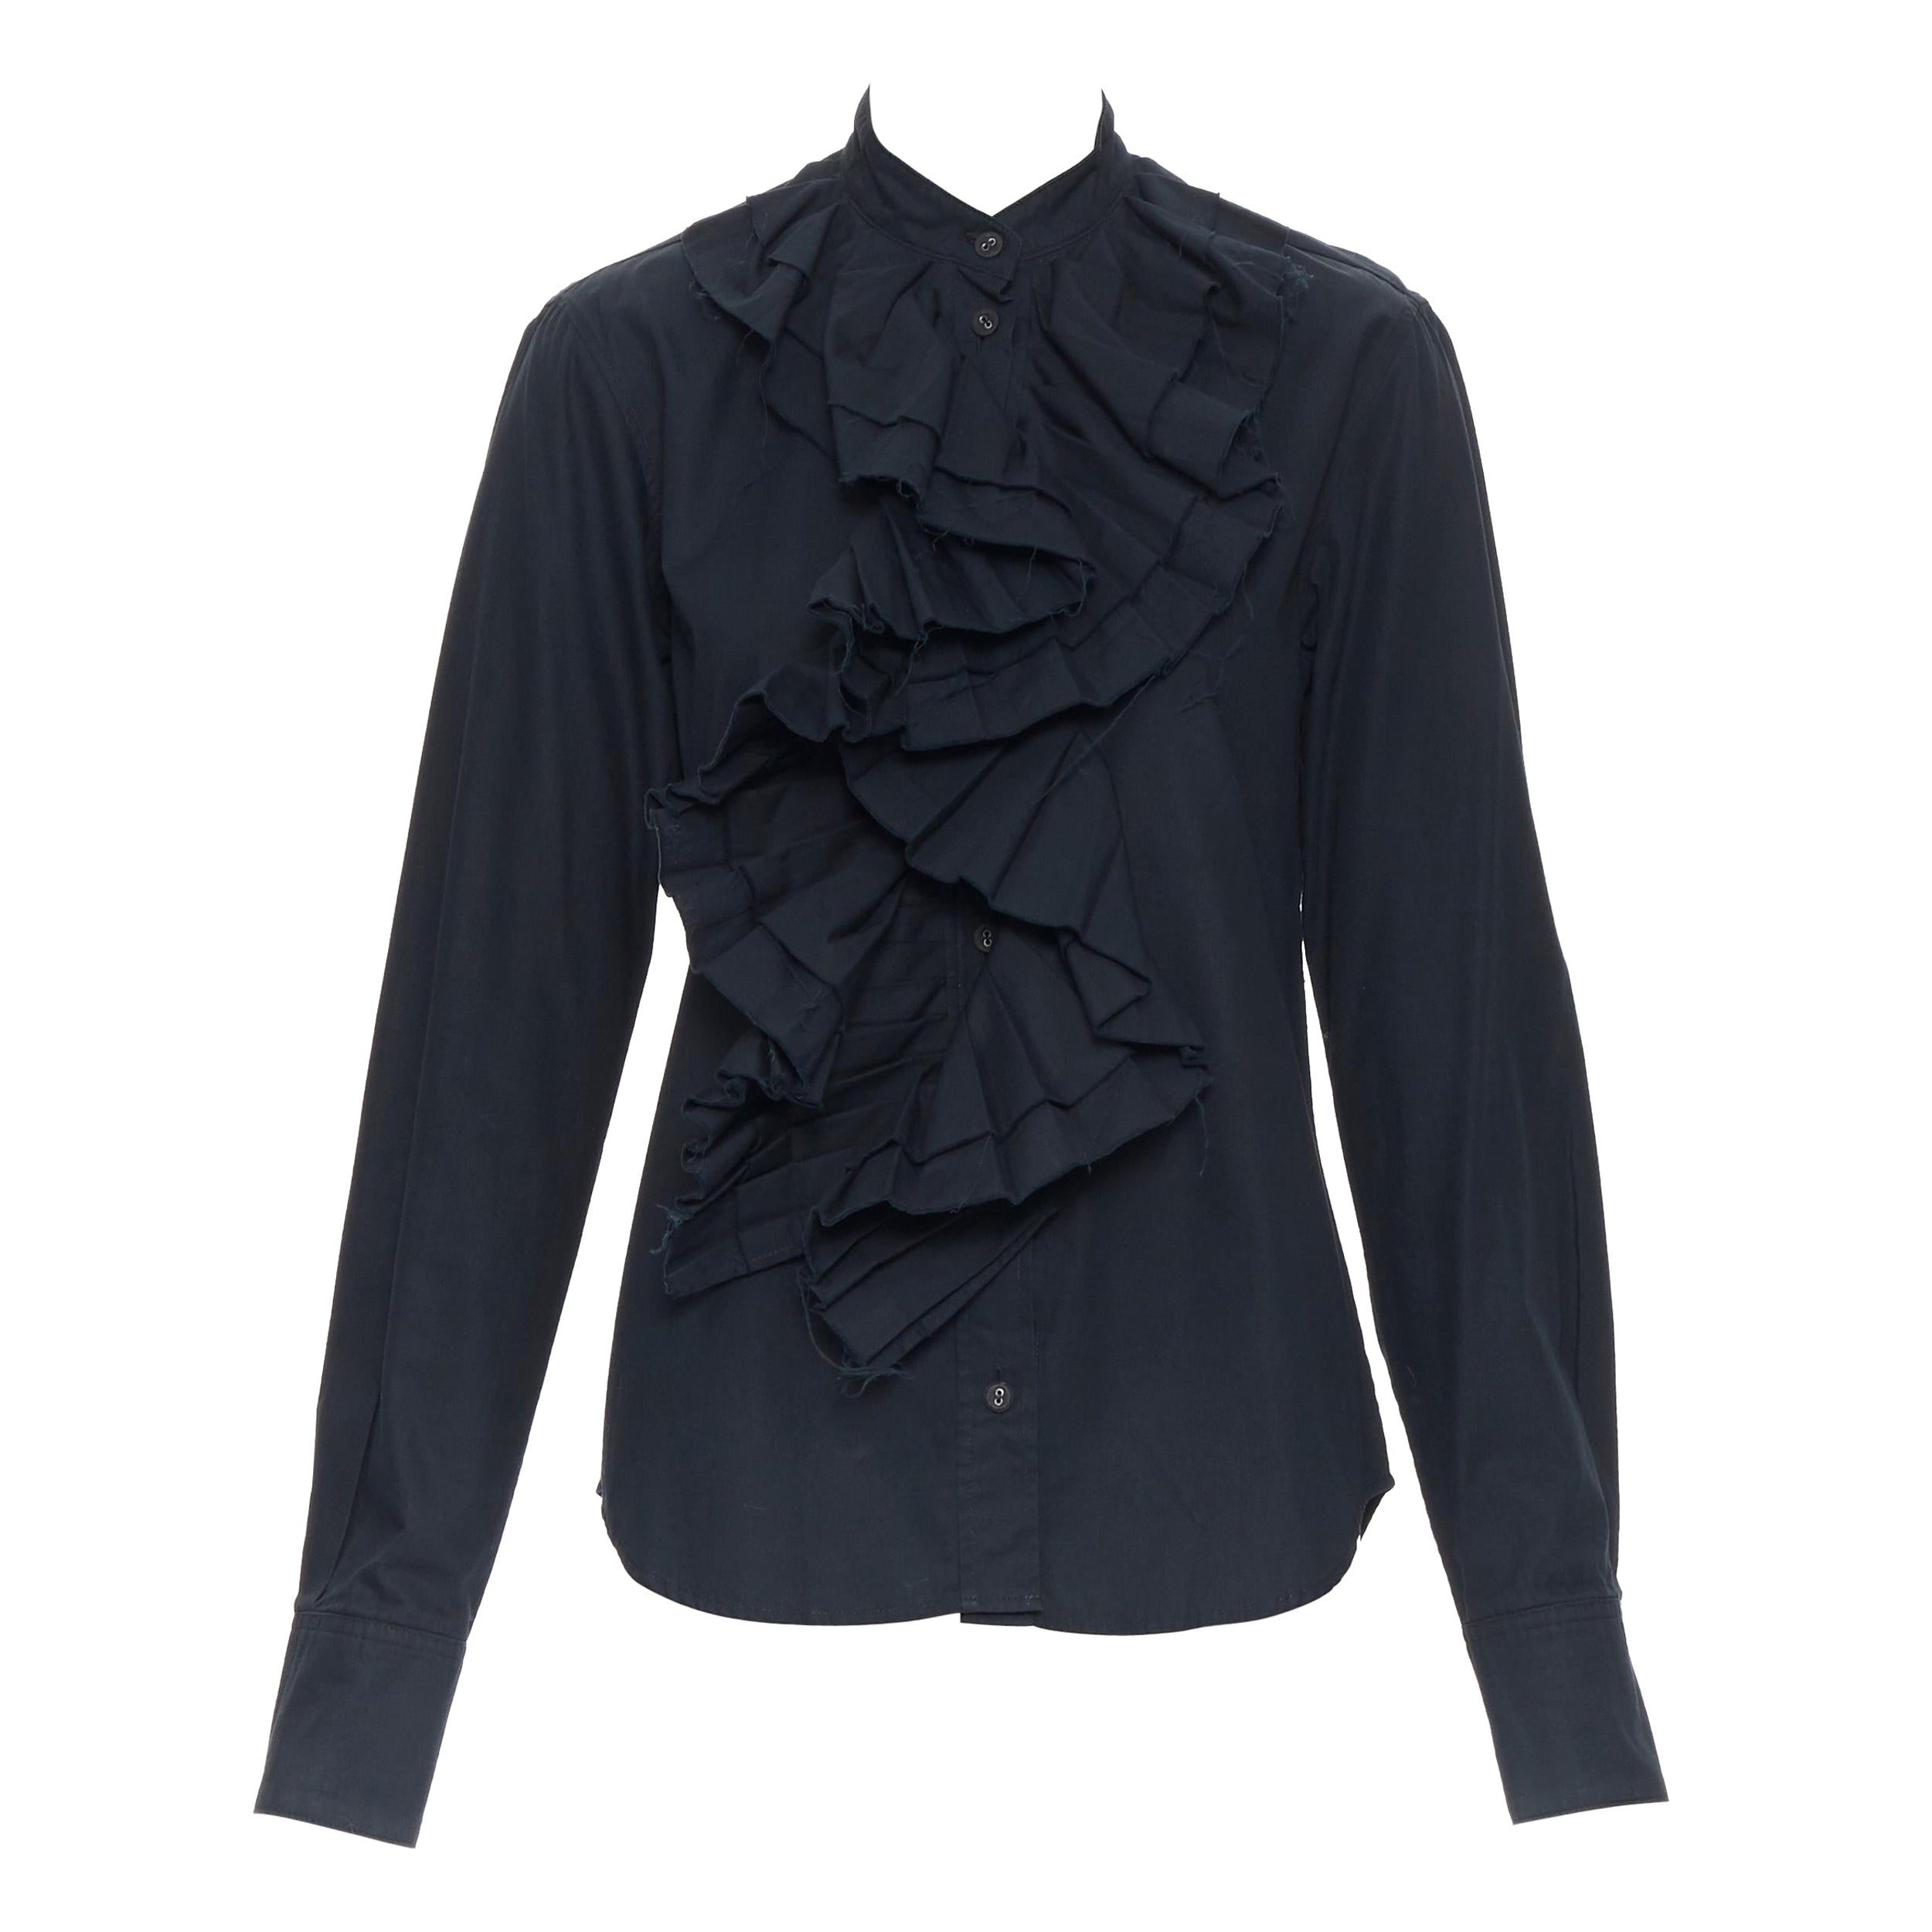 JENS LAUGESEN dark green black Victorian ruffle collar long sleeve shirt UK10